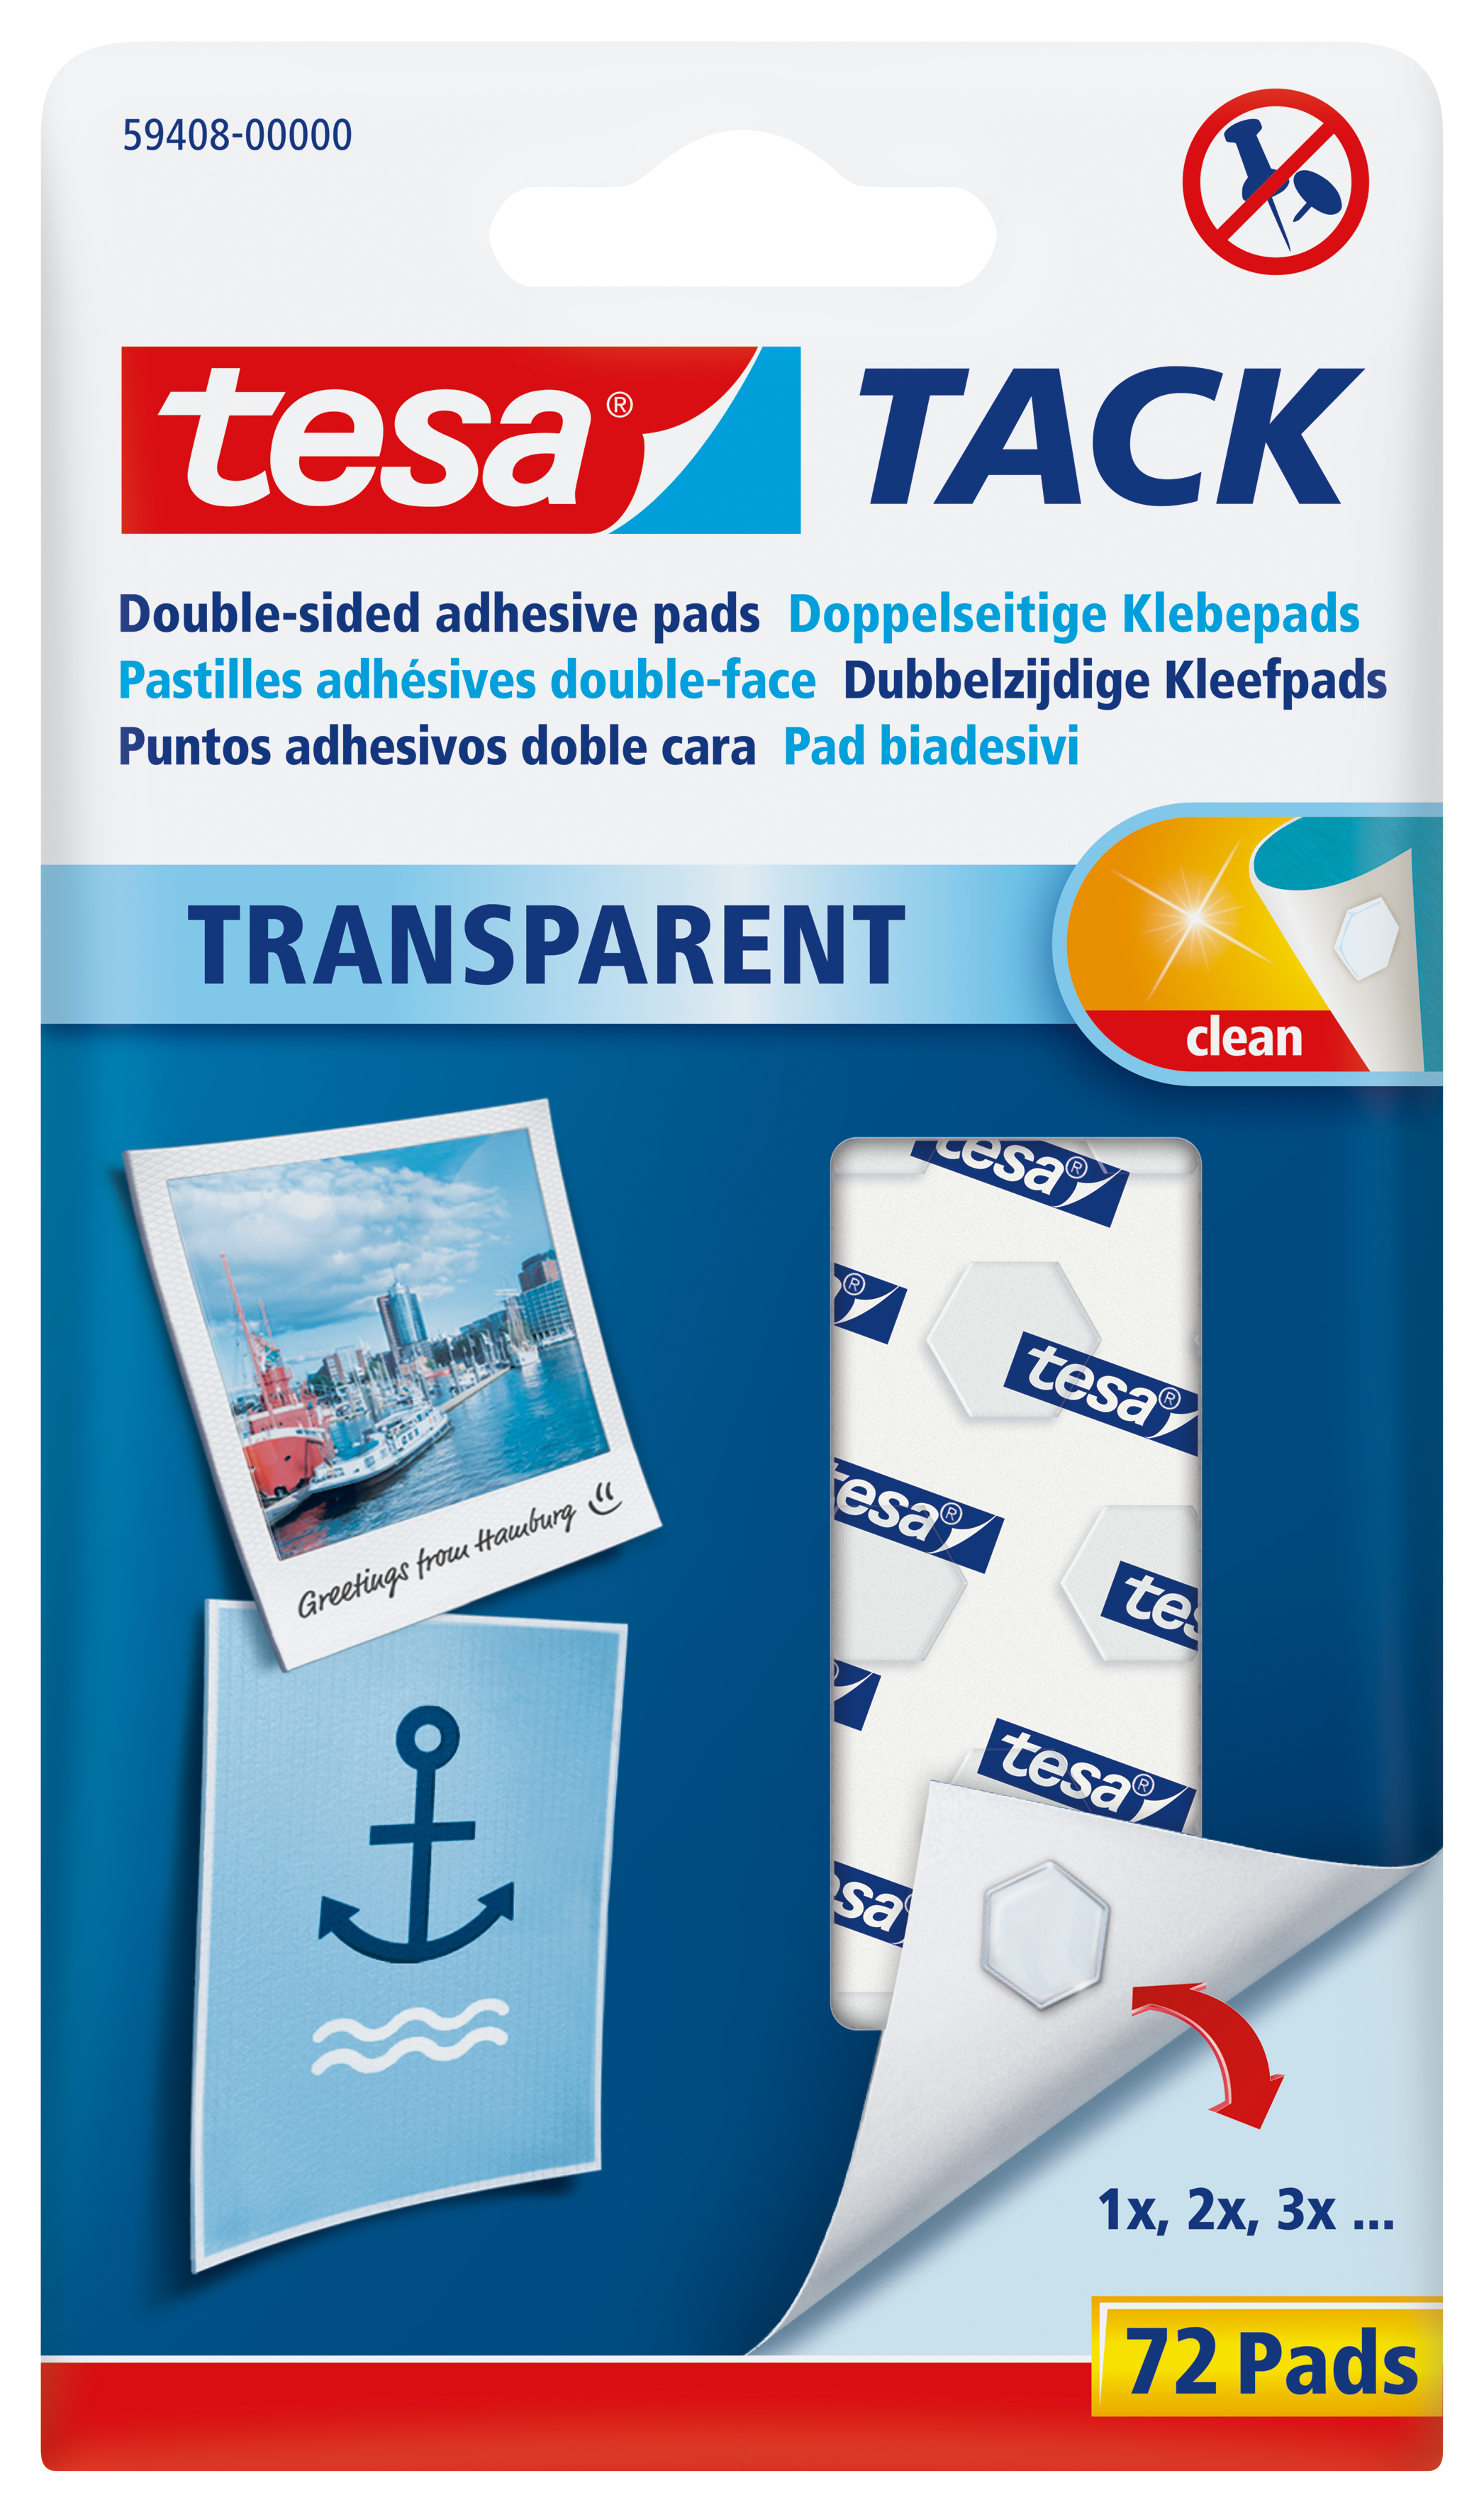 TESA Powerstrips Tack transparent 72 Pads<br>